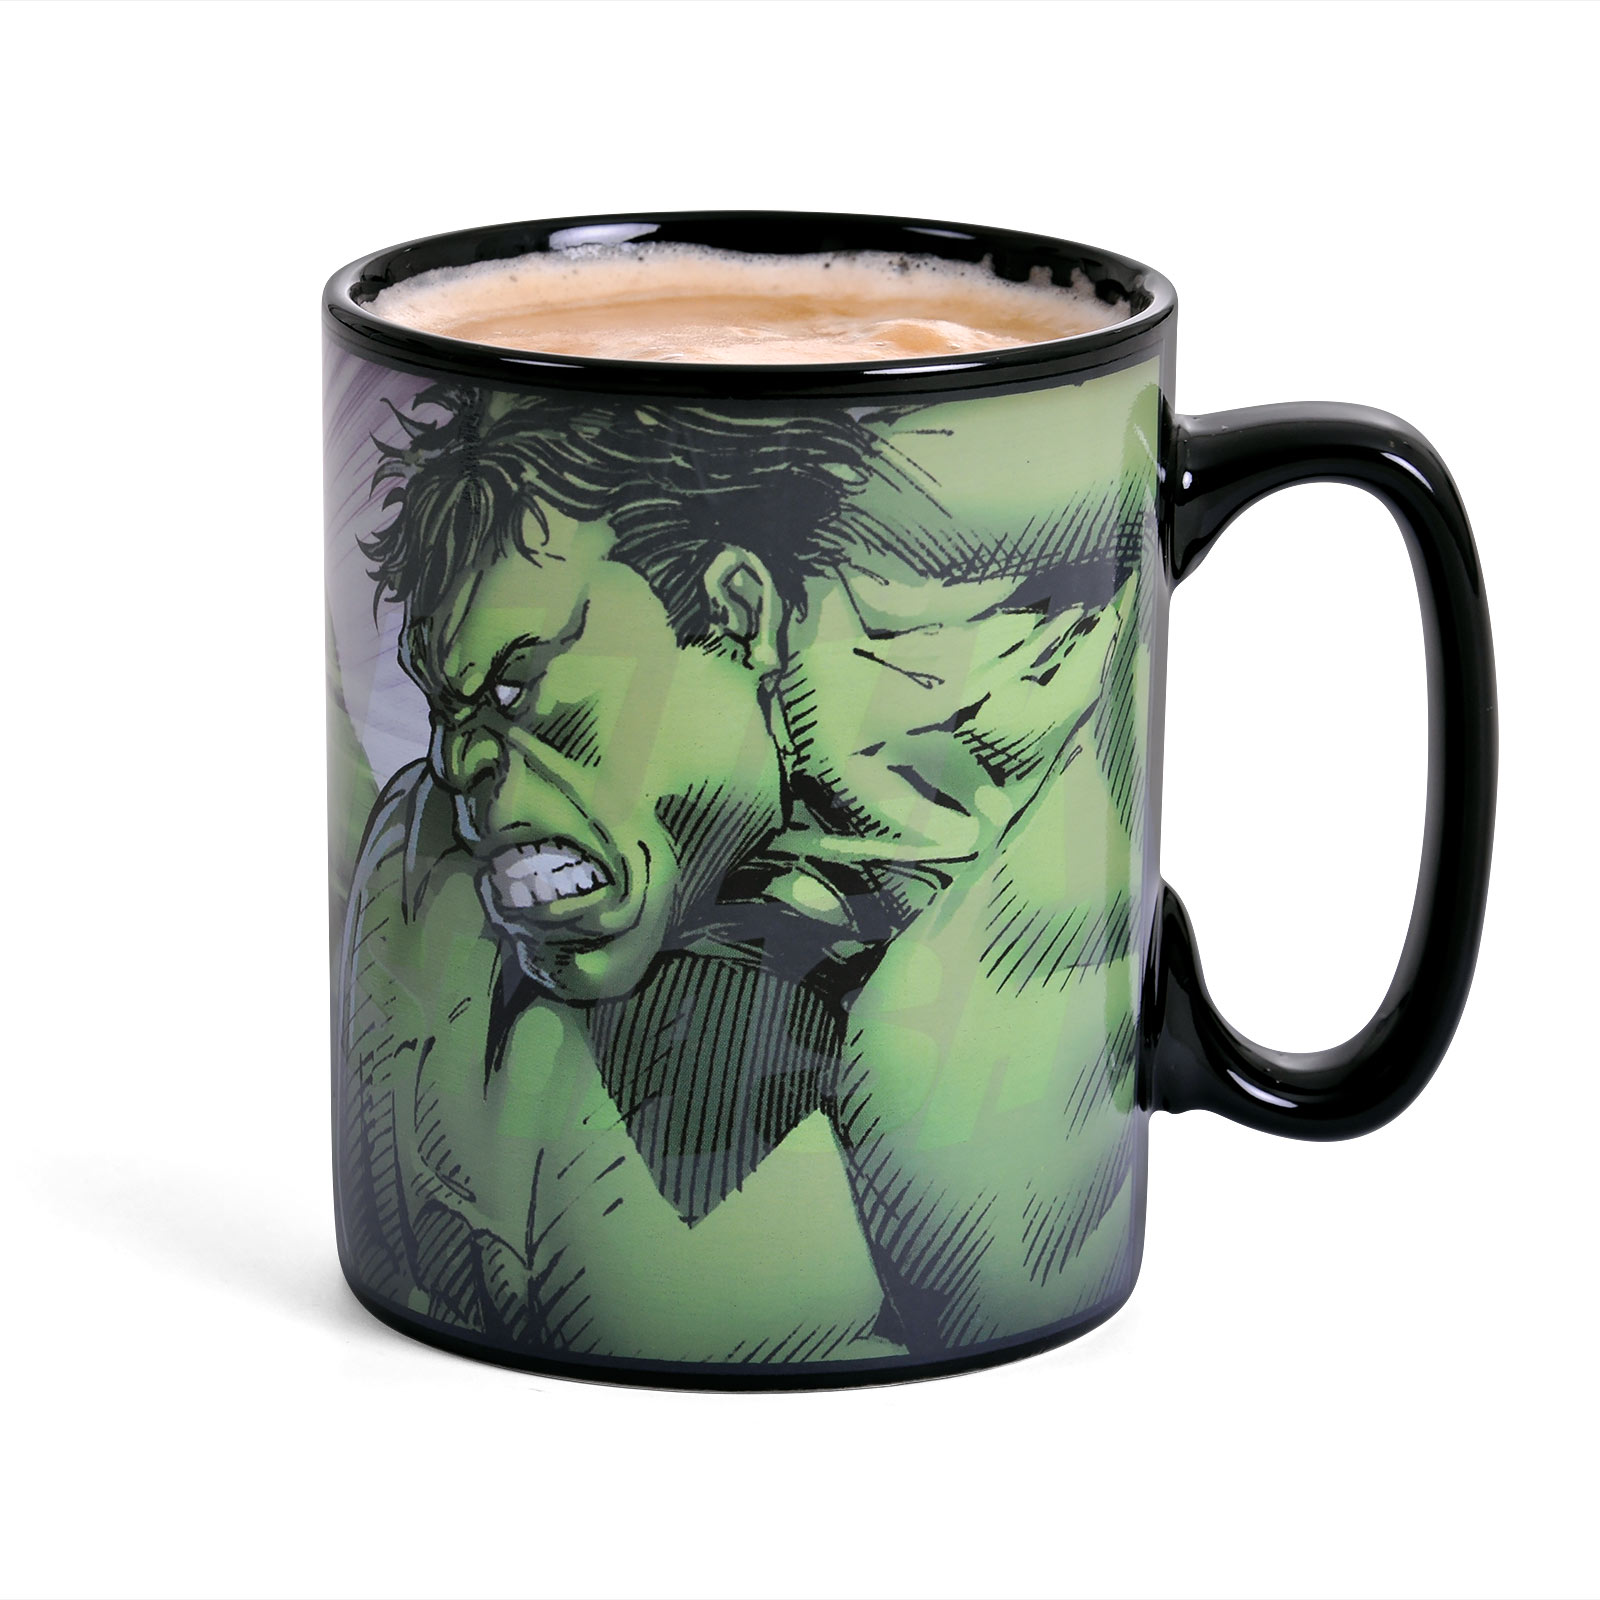 Hulk - Smash Thermoeffect Mug